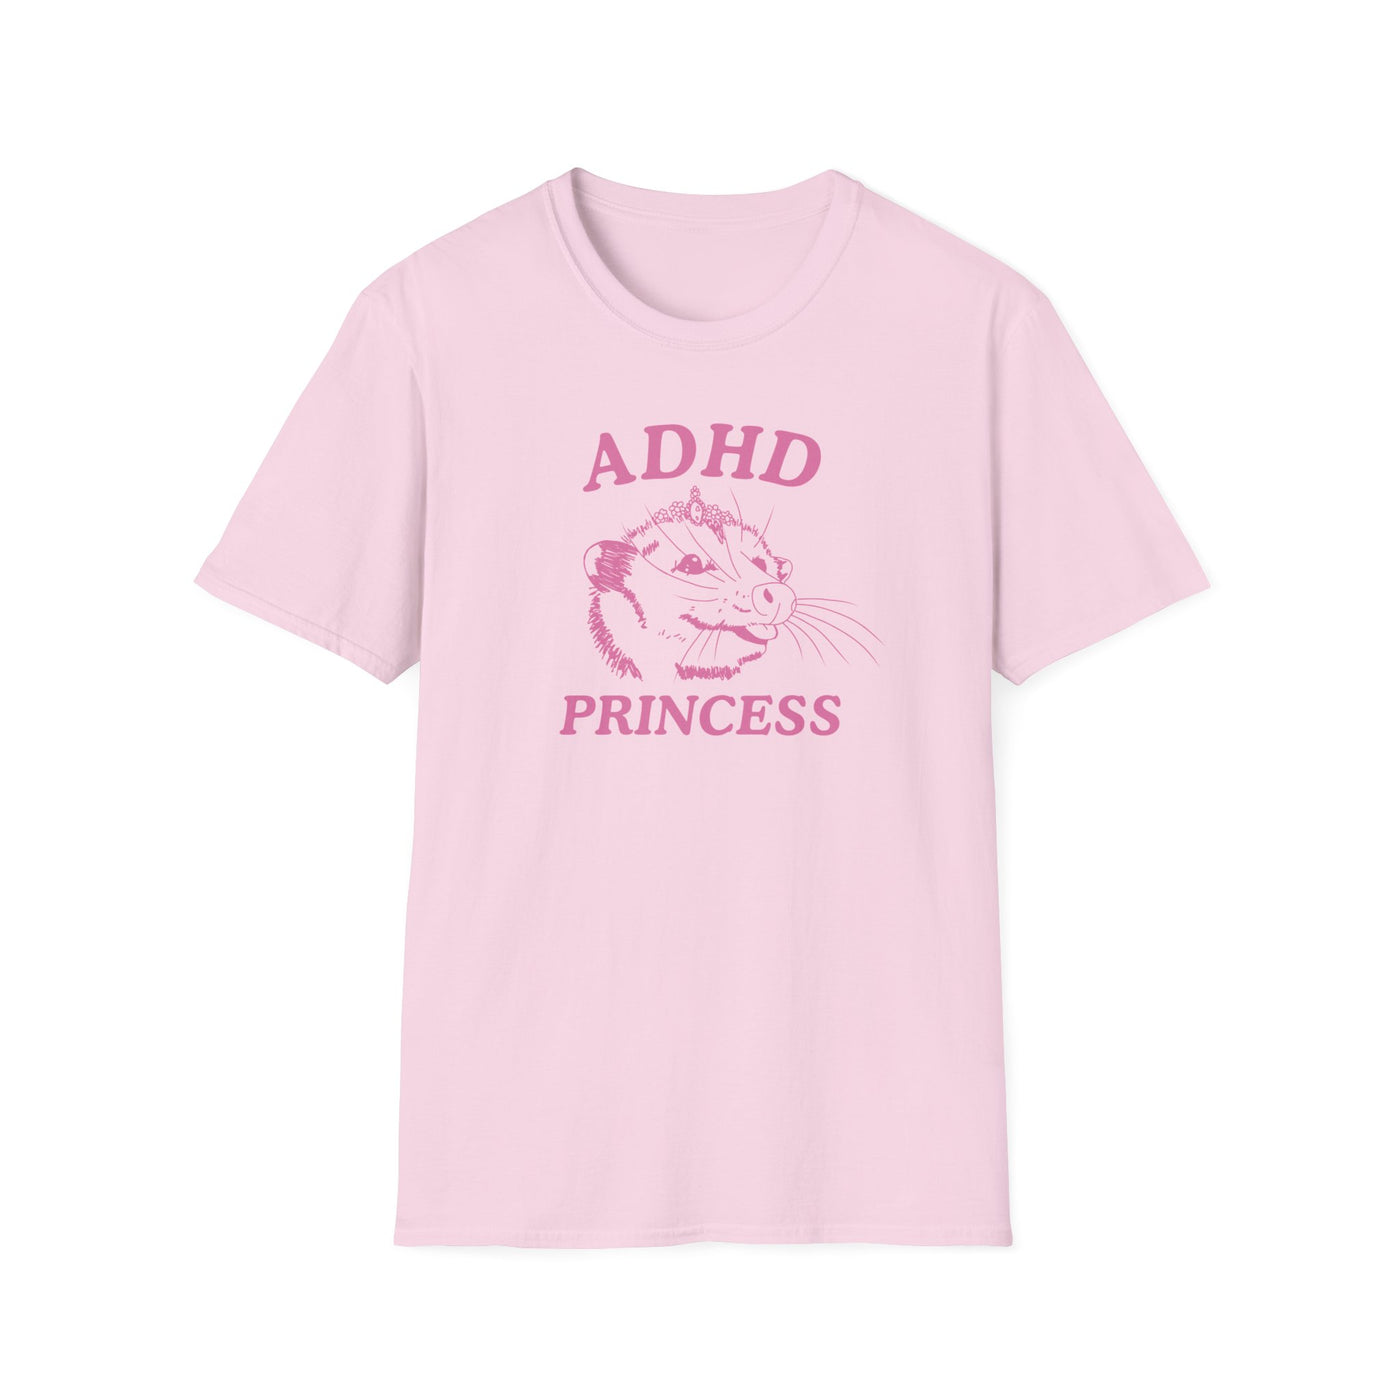 ADHD Princess